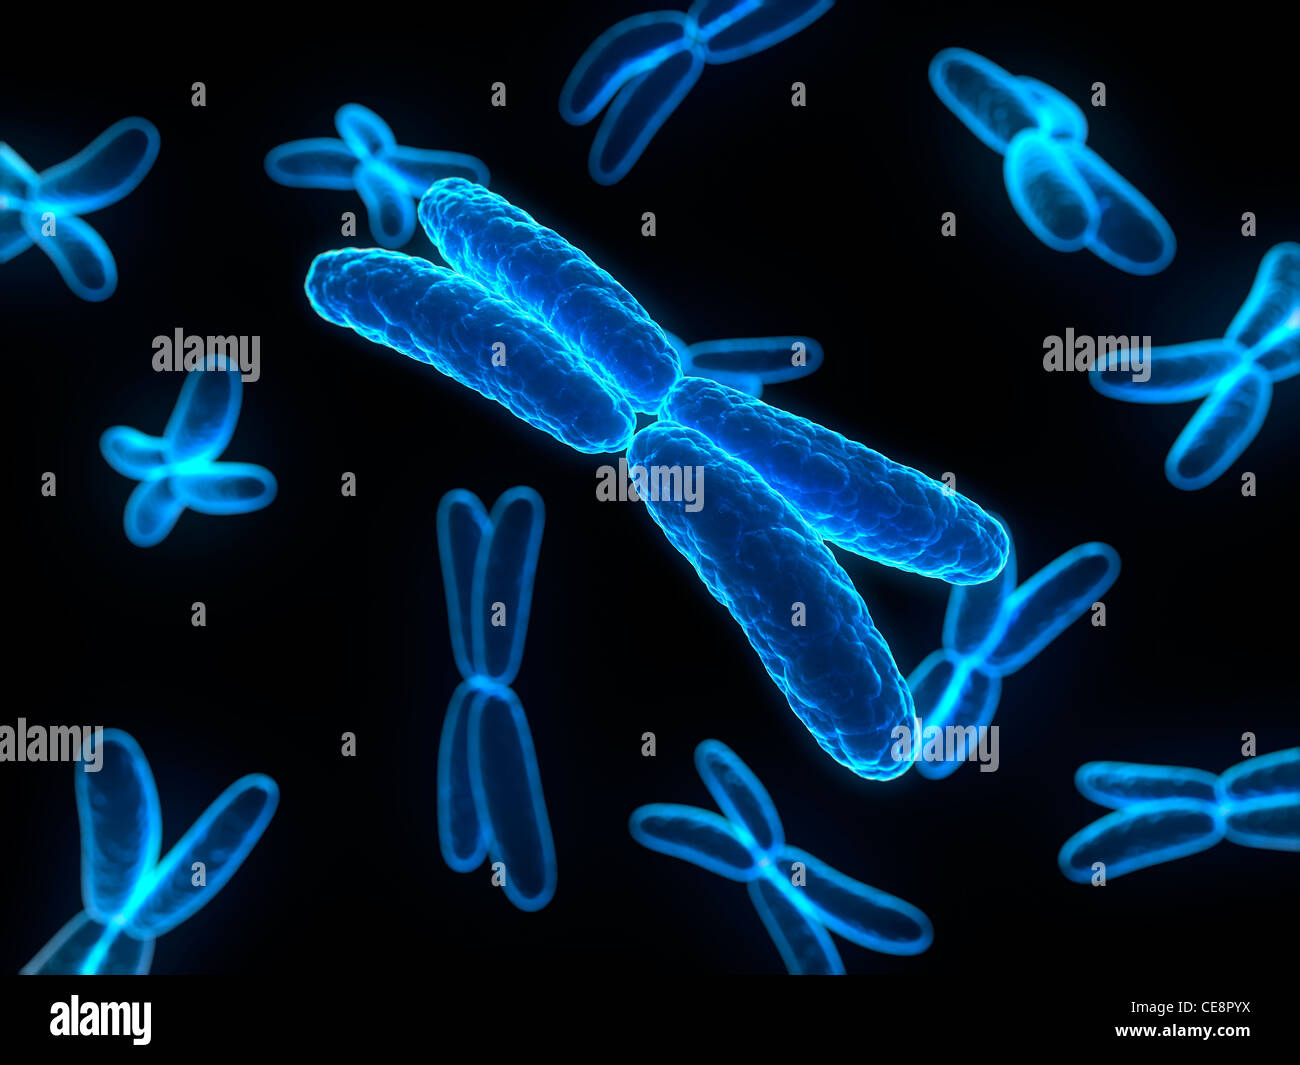 Хромосомы лучше видны. Хромосома. ДНК И хромосомы. Изображение хромосомы. Хромосомы картинки.